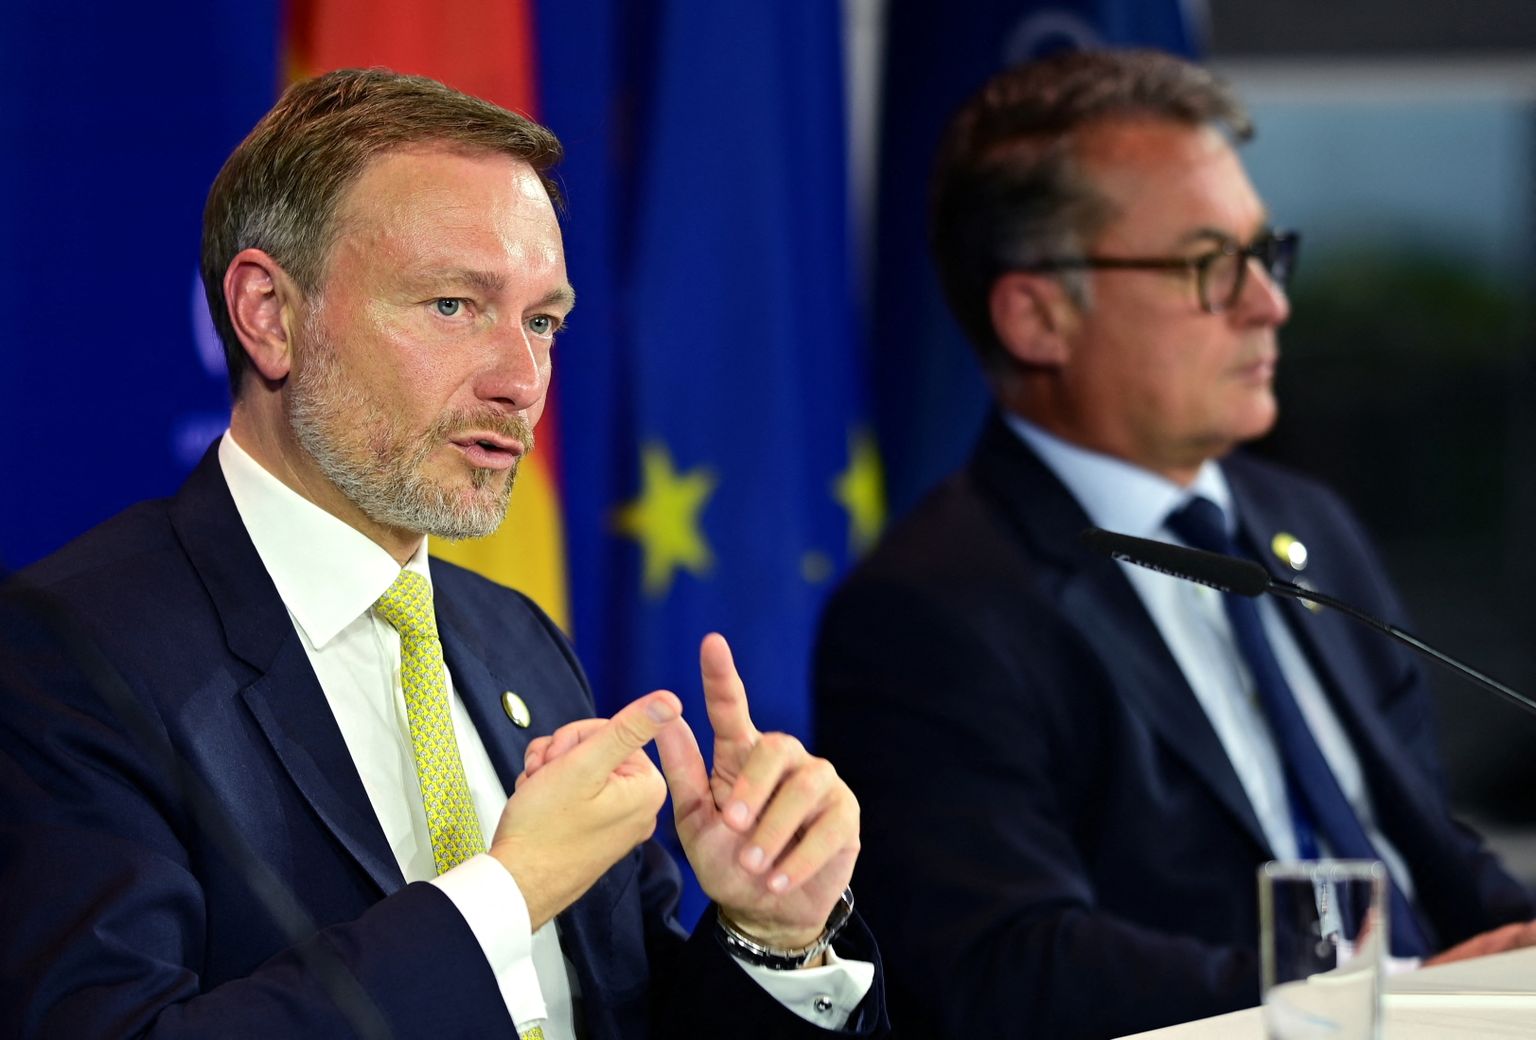 Saksa rahandusminister Christian Lindner (vasakul) ja Bundesbanki president Joachim Nagel 20. mail 2022 Bonni lähistel Königswinteris ajakirjanikele esinemas.